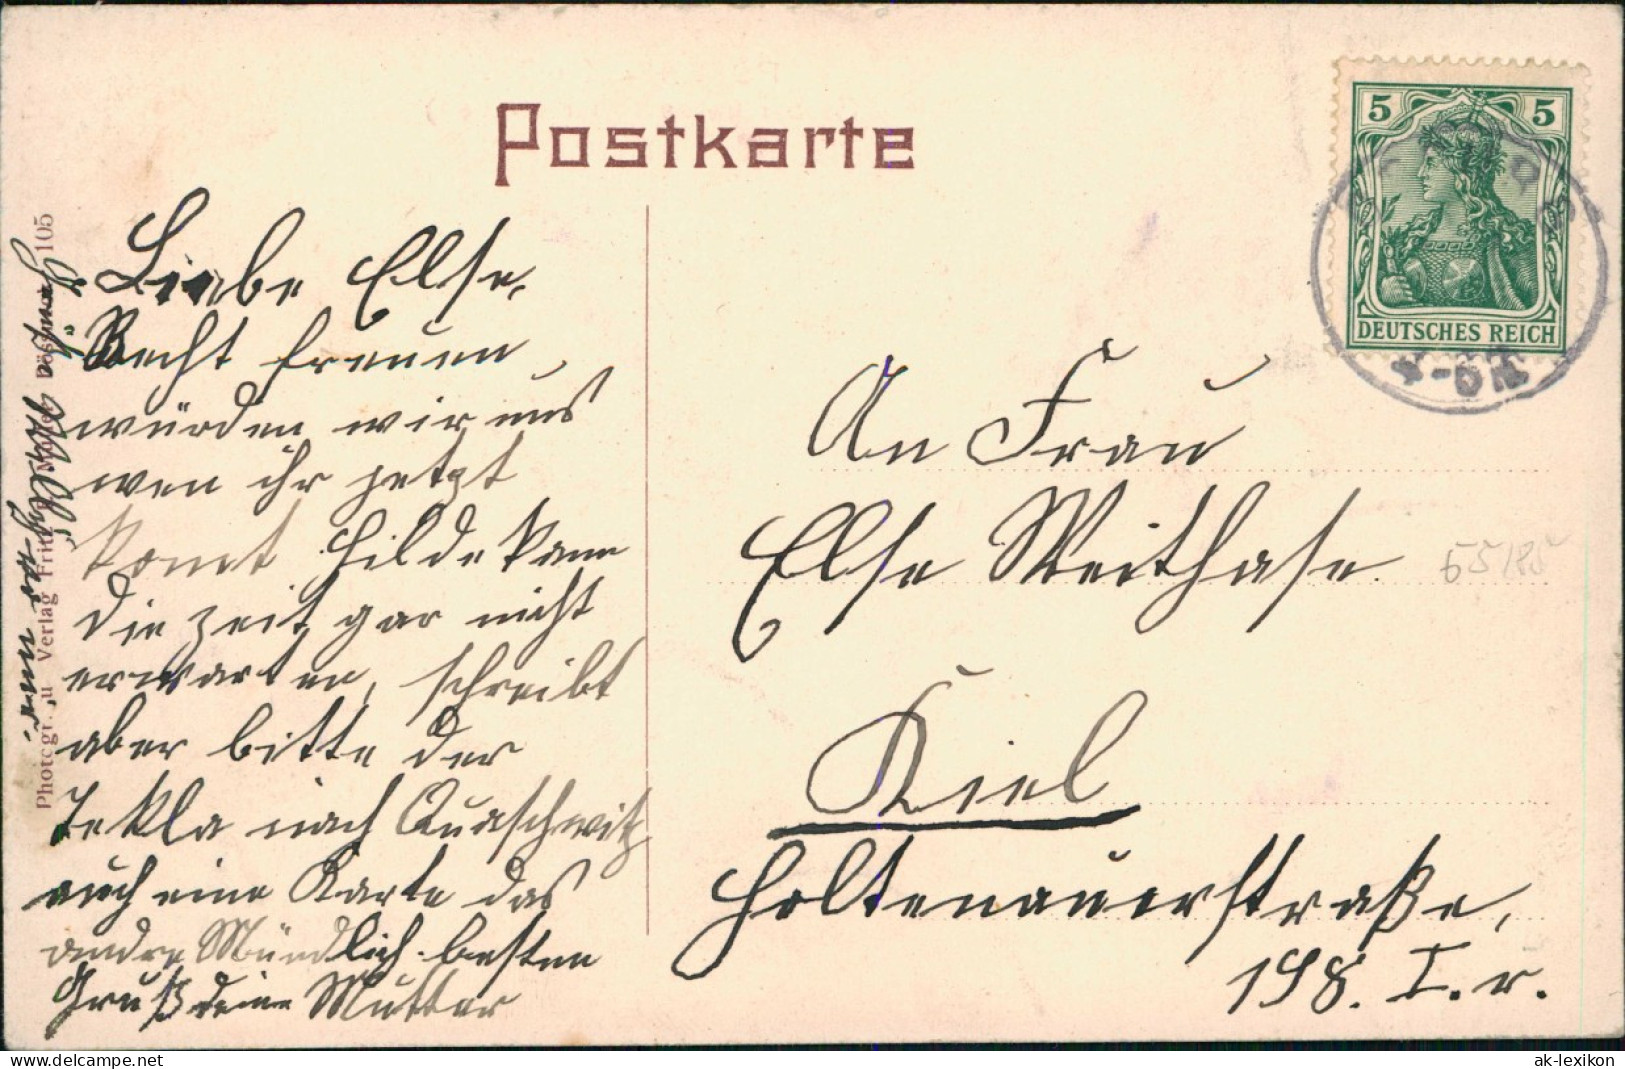 Ansichtskarte Pößneck Gerberstrasse 1912 - Poessneck